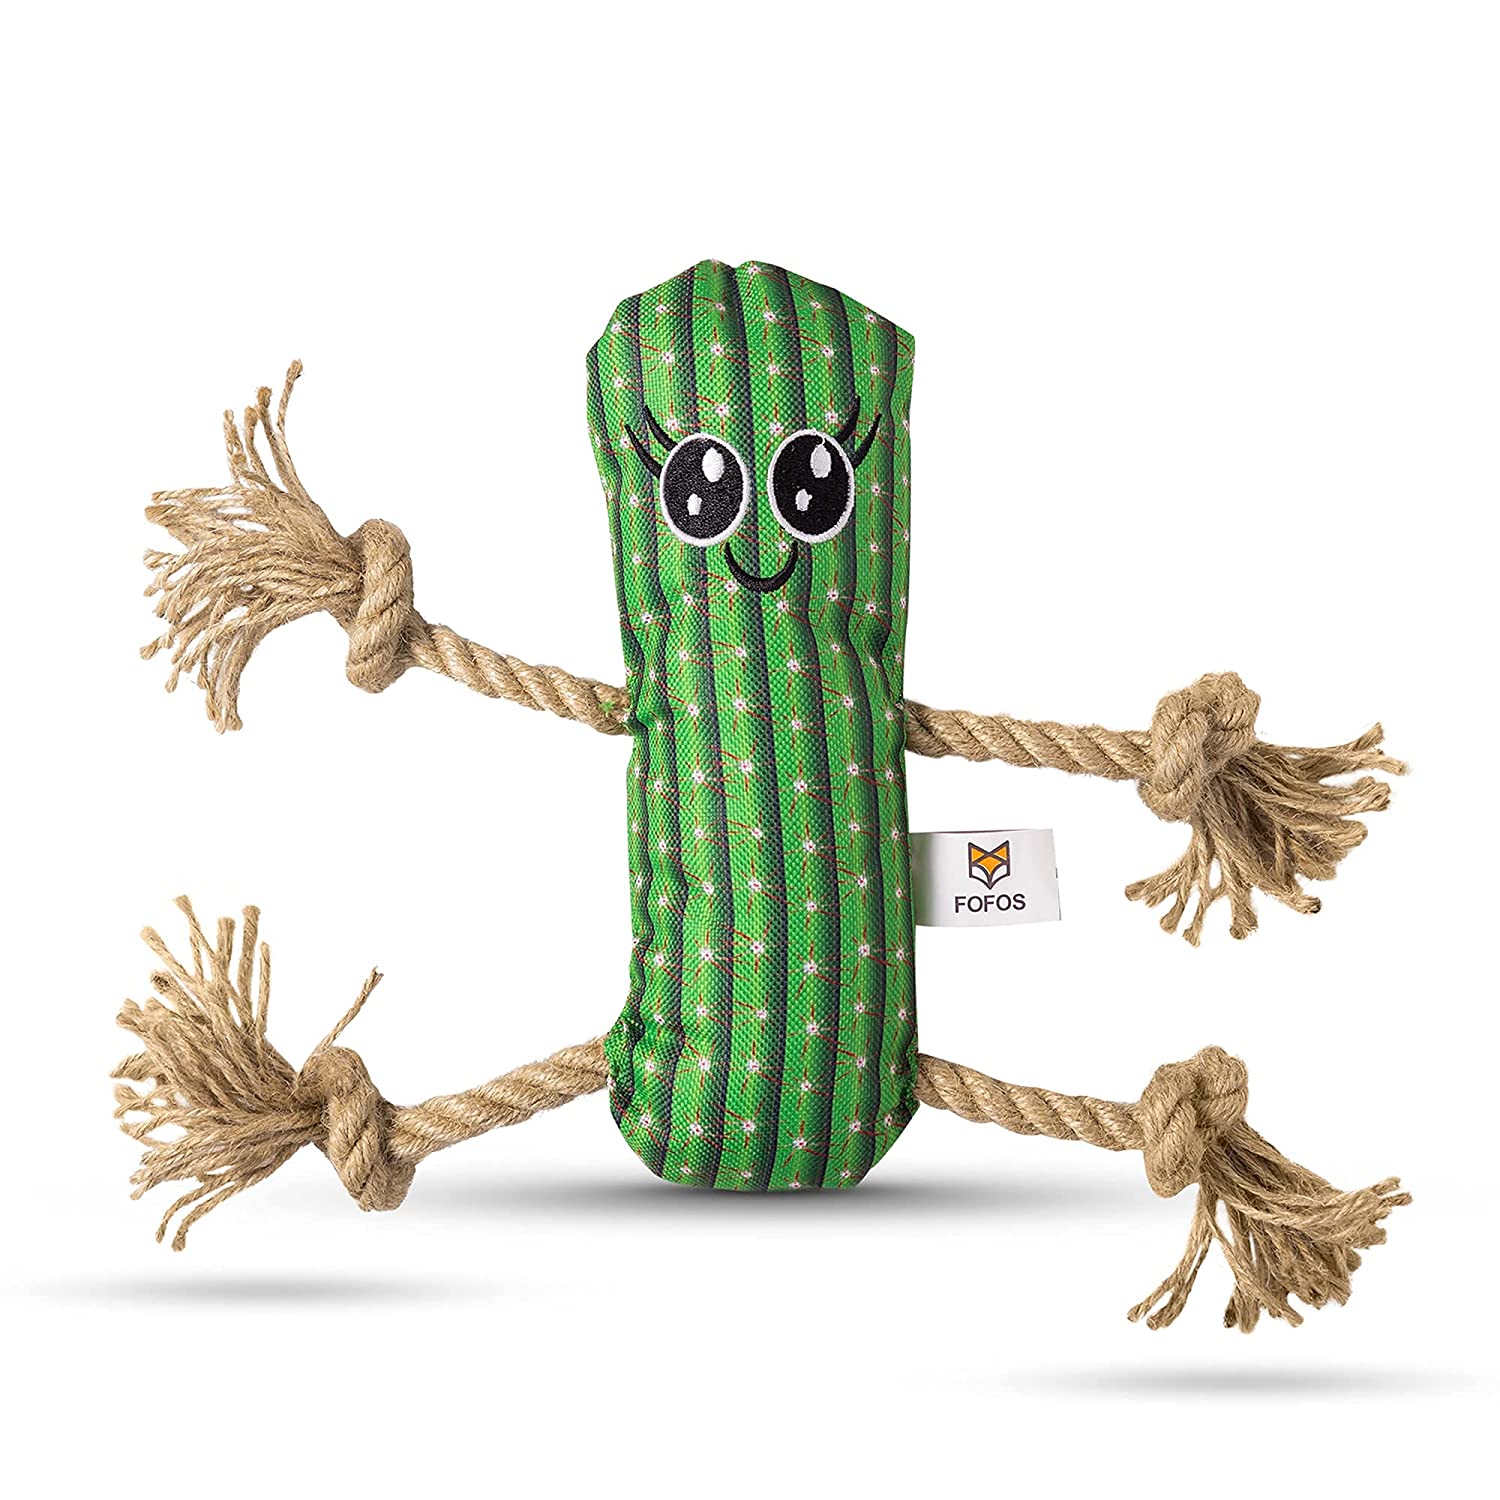 FOFOS Cactus Man With Hemp Rope